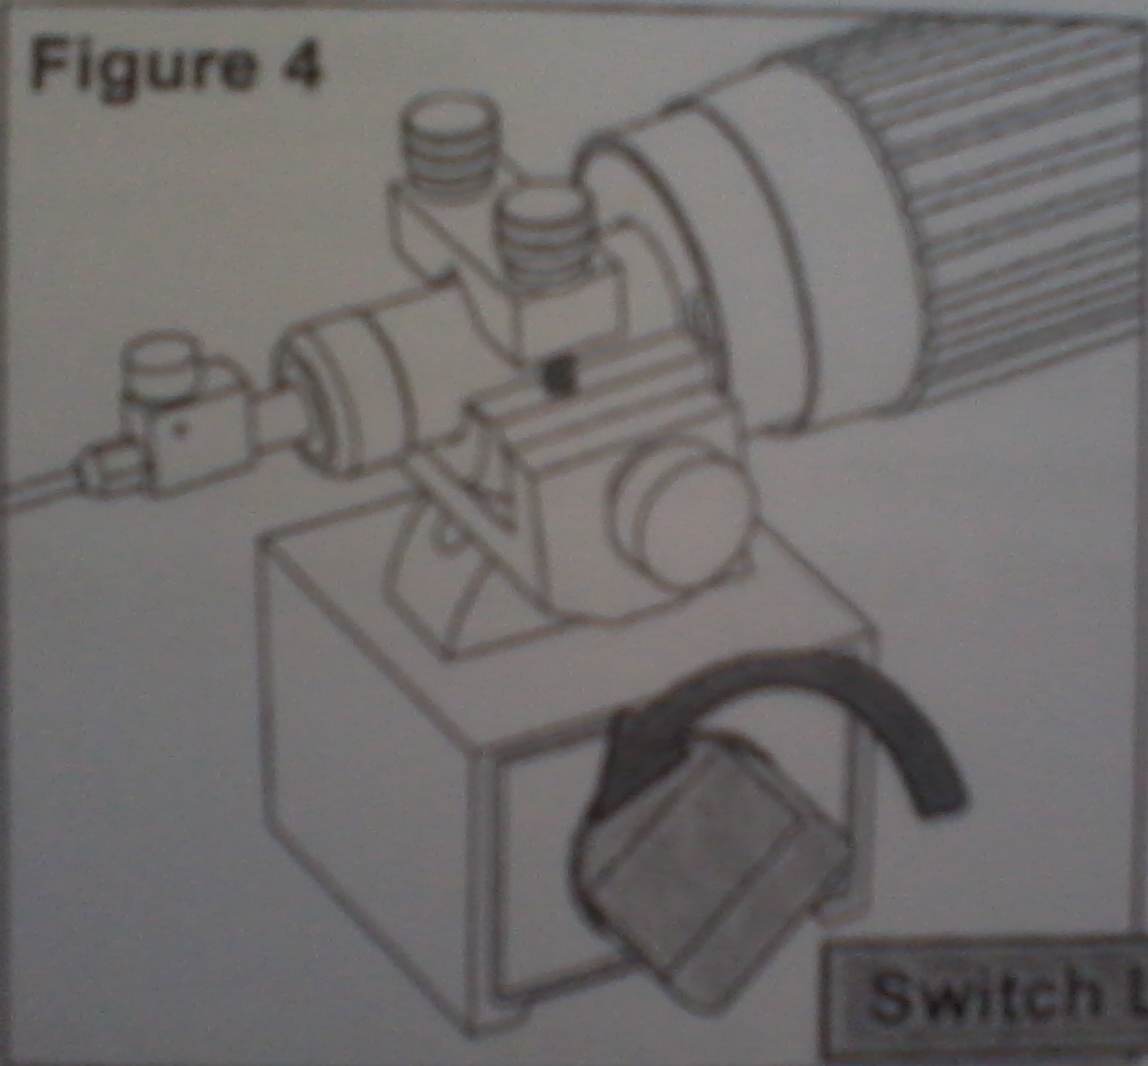 如何安装微注射器 使用提供的磁性底座 将 IM-9C 置于铁质底座上 旋转开关钮至左边以将磁性底座锁在该位置 参见 图 4 若要打开磁性底座 只需将开关钮旋至右边 图图4 4 开关旋钮